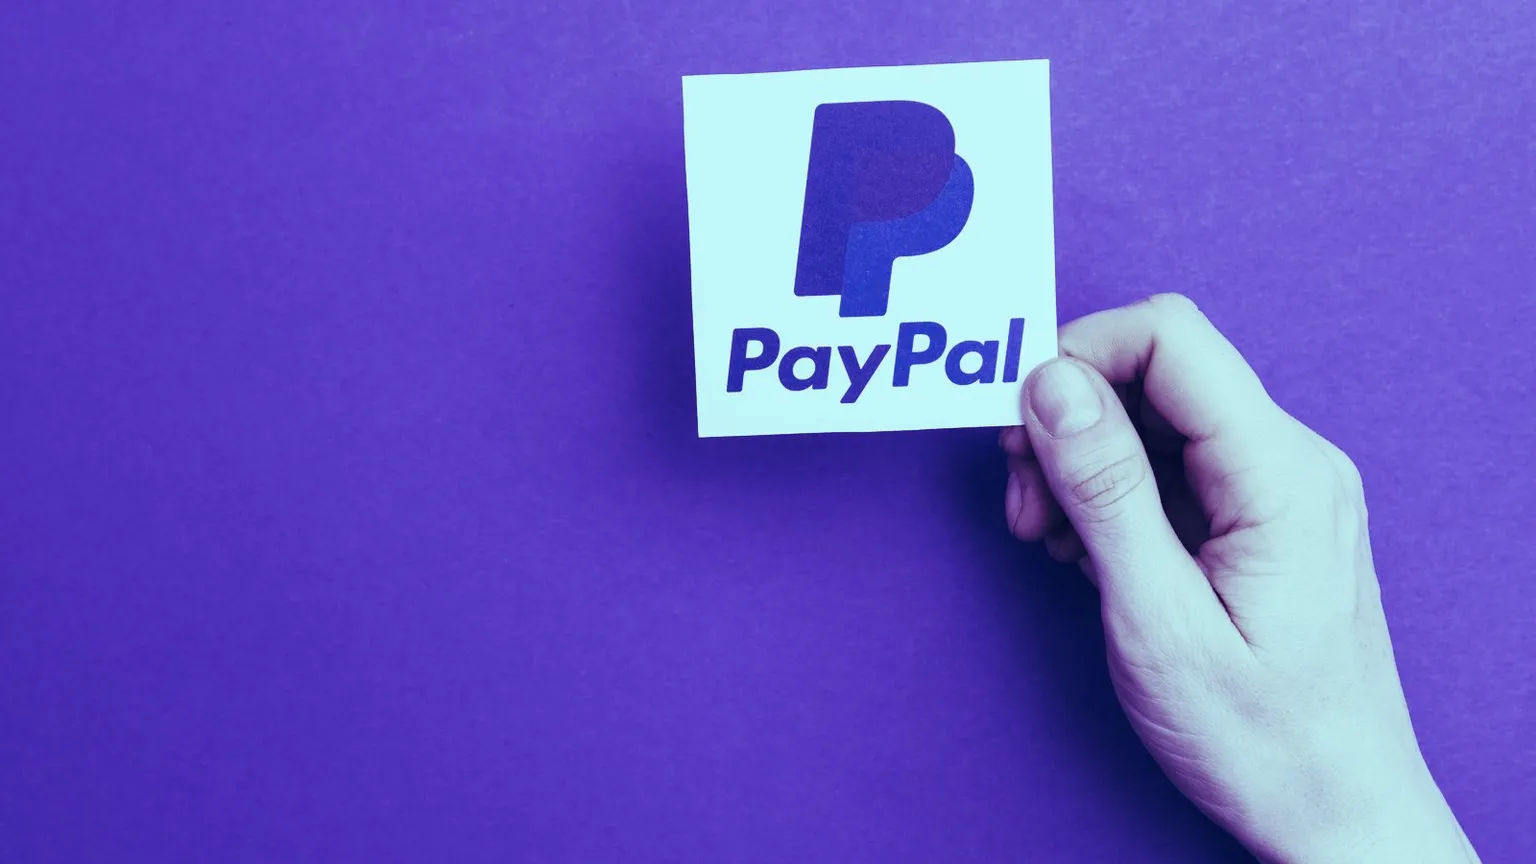 PayPal Confirma Estár Explorando el Desarrollo de Su Propia Stablecoin. Imagen: Shutterstock